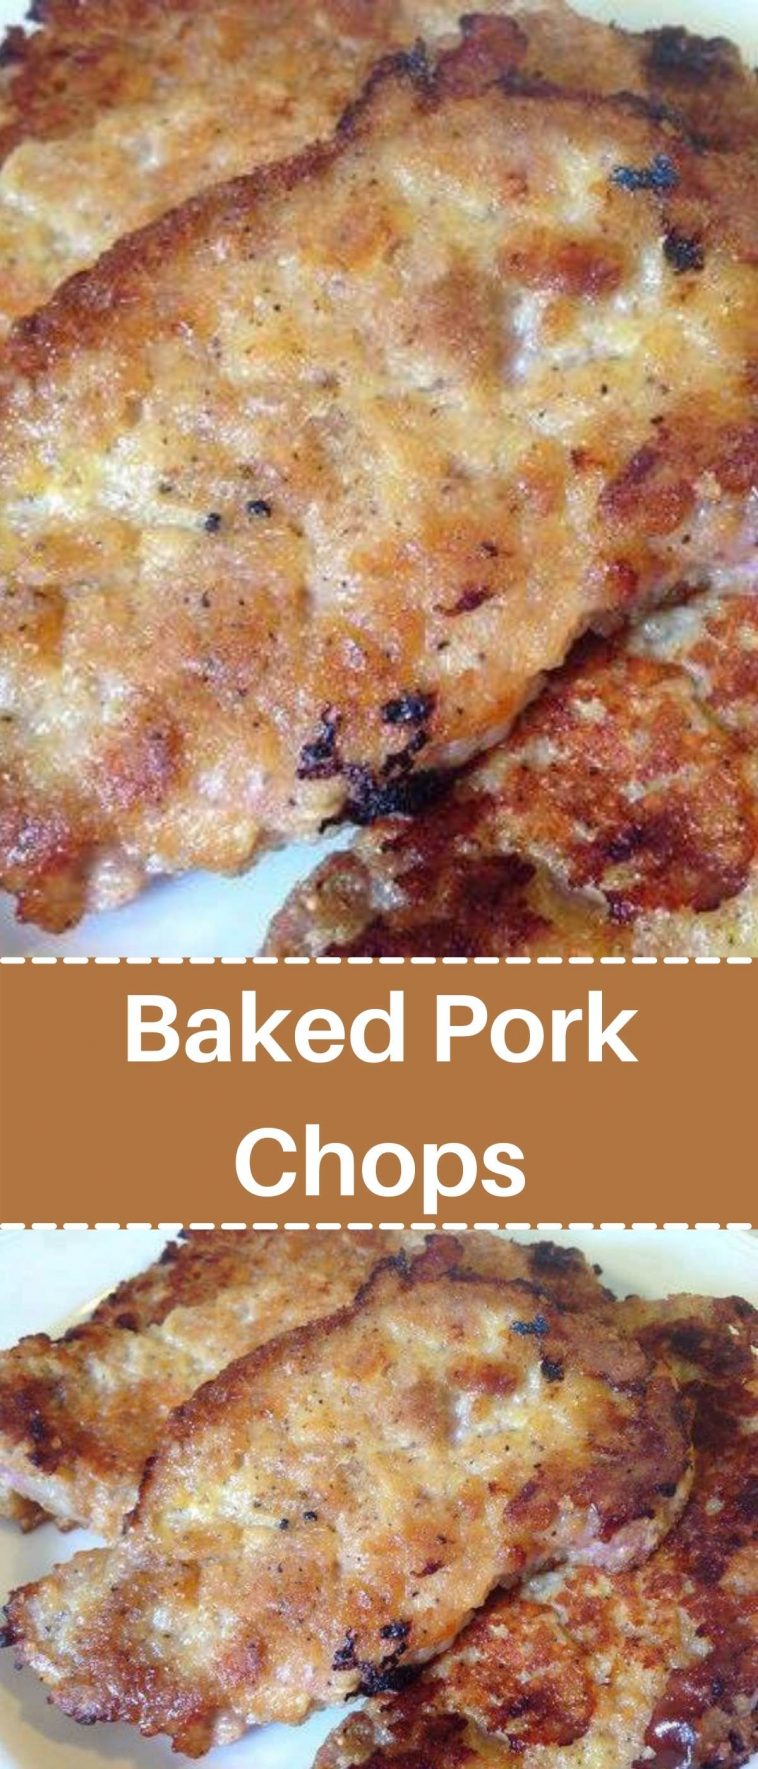 Baked Pork Chops